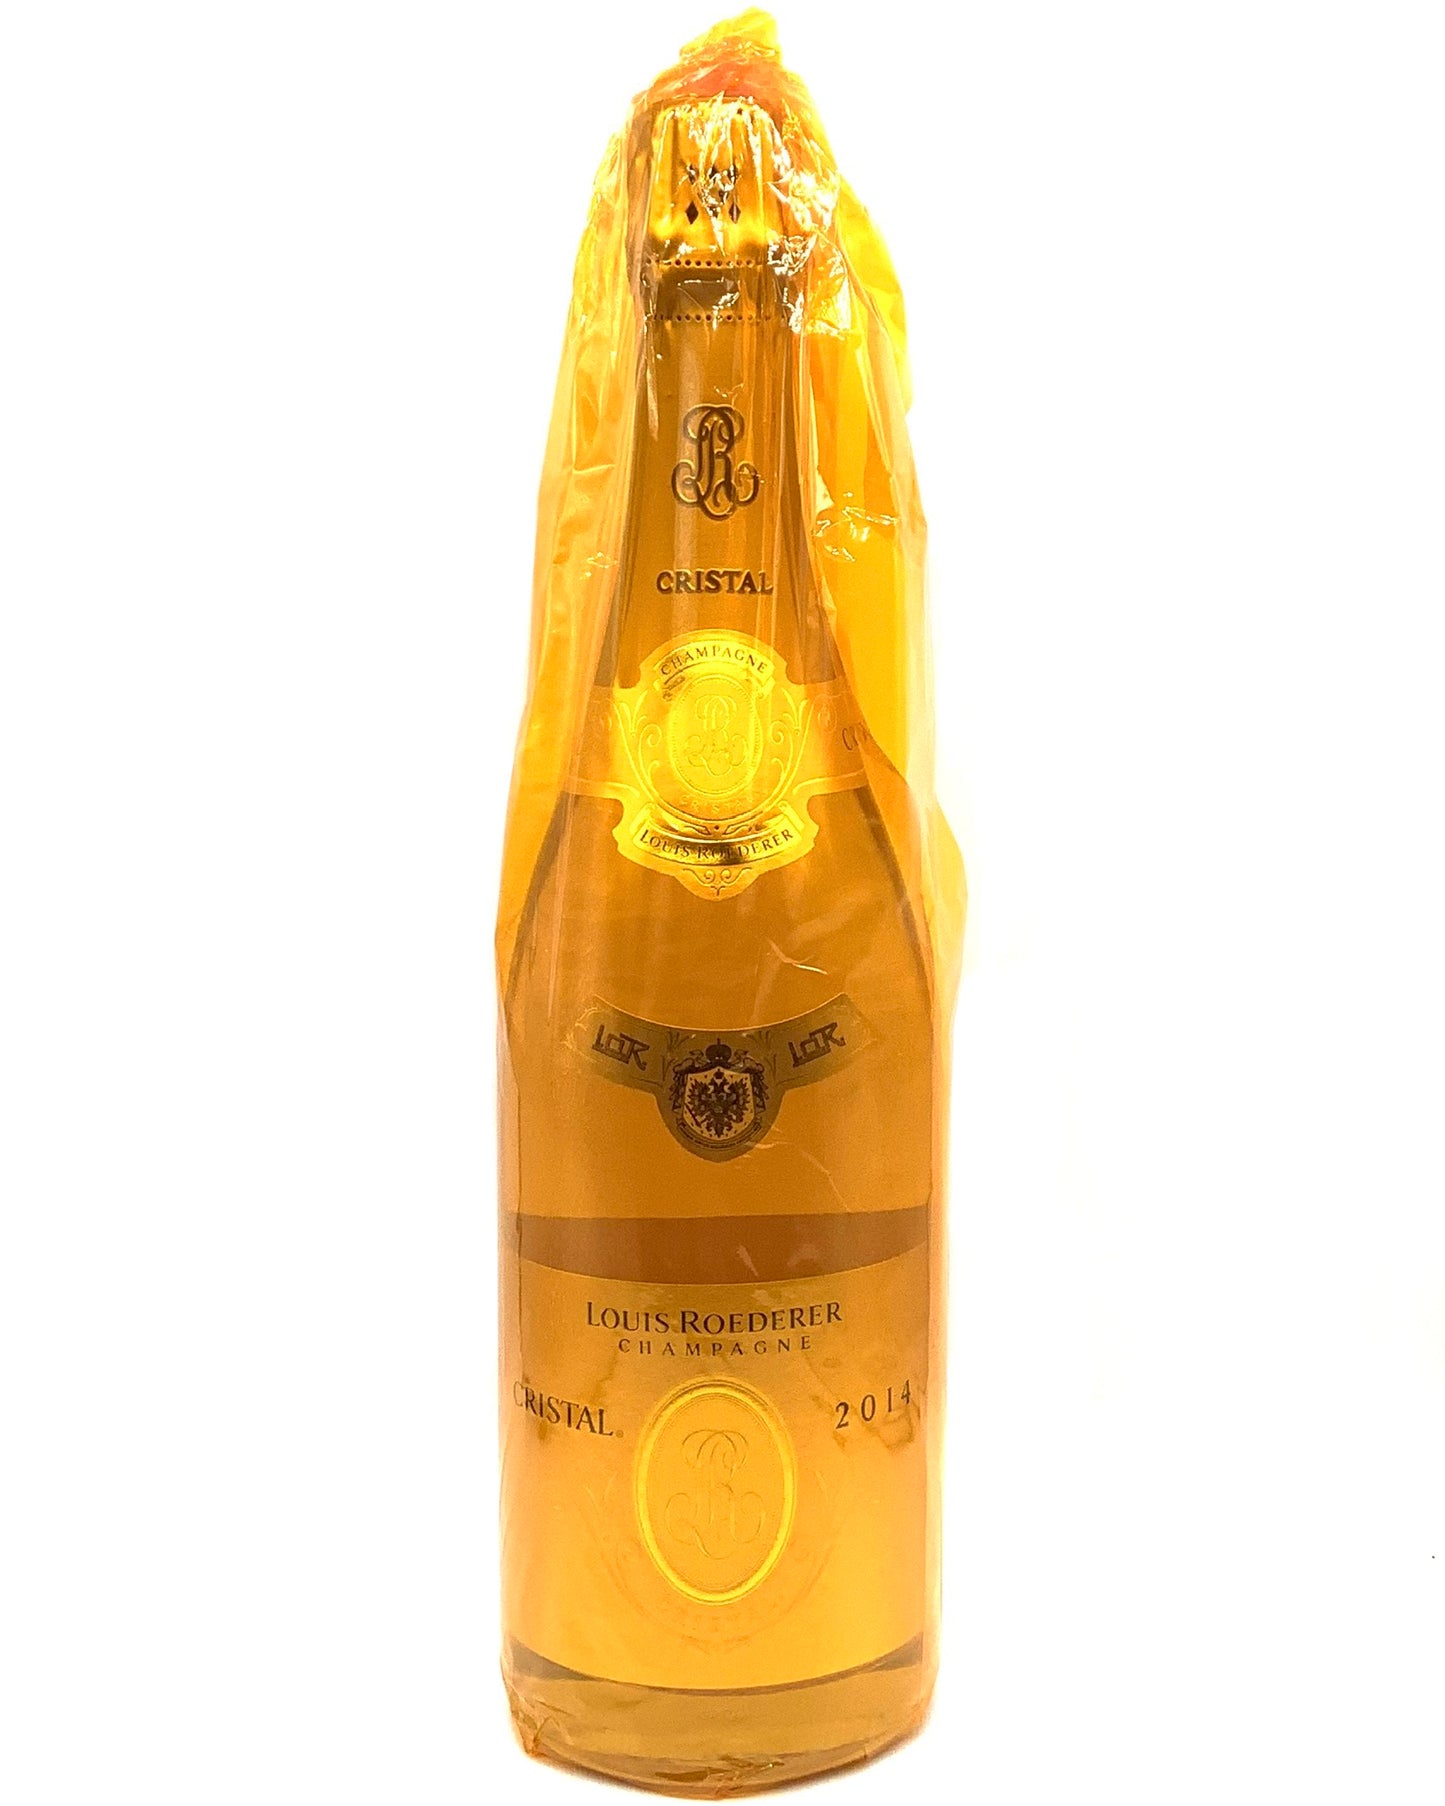 Cristal, Roederer Champagne Brut 2014 newarrival